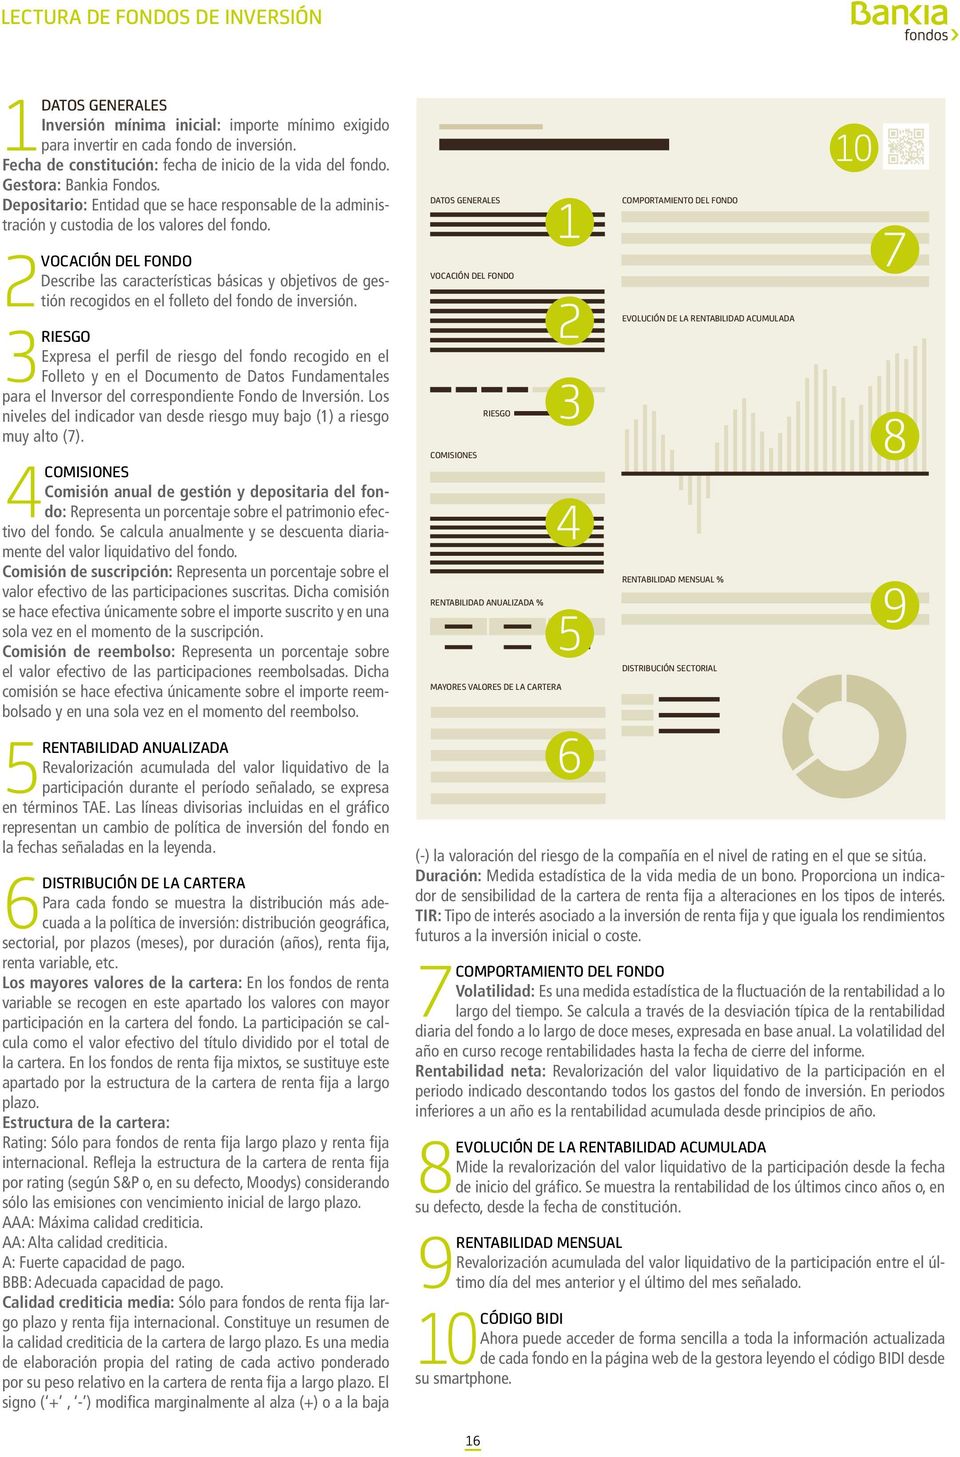 2 VOCACIÓN DEL FONDO Describe las características básicas y objetivos de gestión recogidos en el folleto del fondo de inversión.